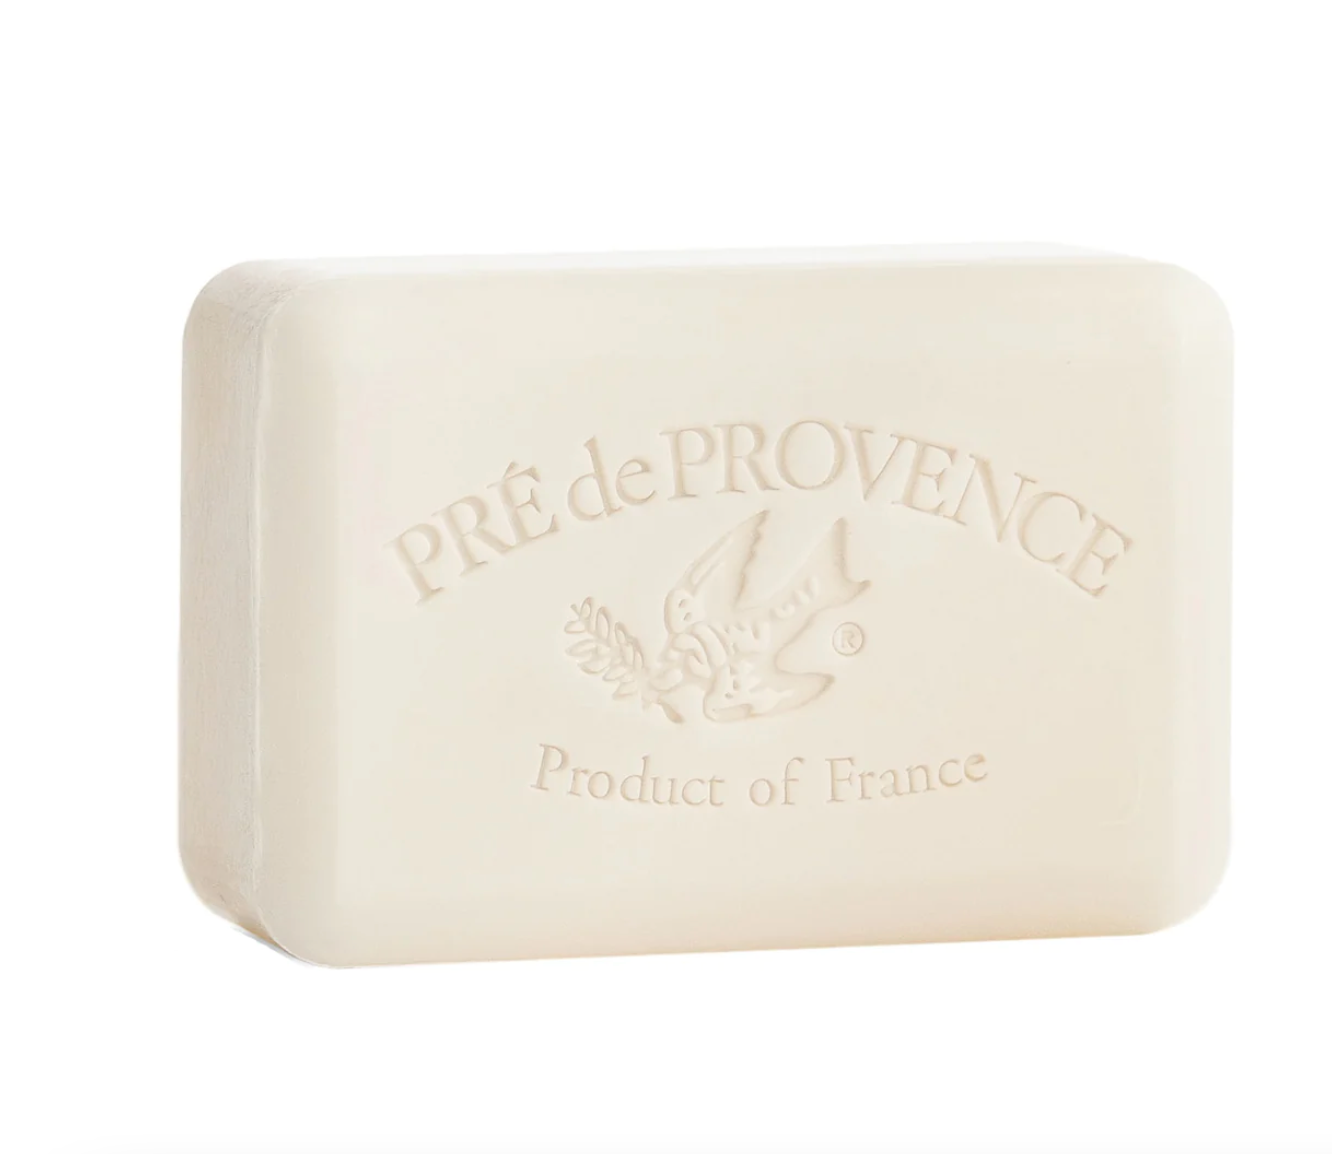 Milk soap bar by Pré de Provence